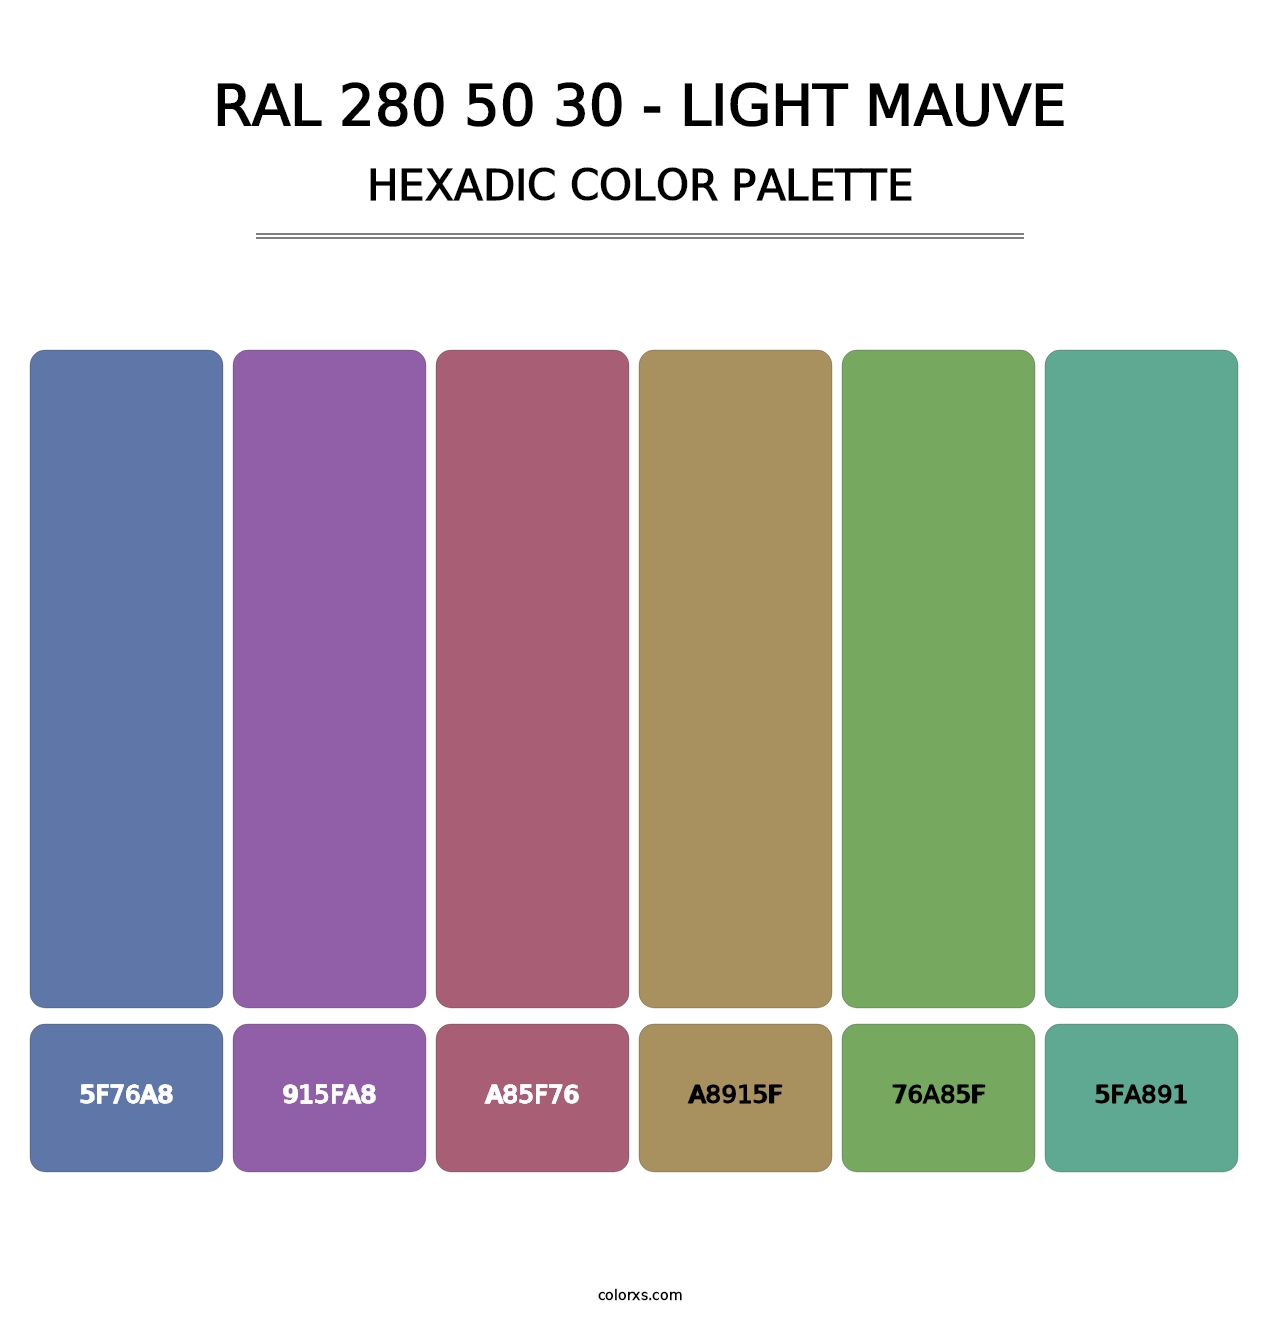 RAL 280 50 30 - Light Mauve - Hexadic Color Palette